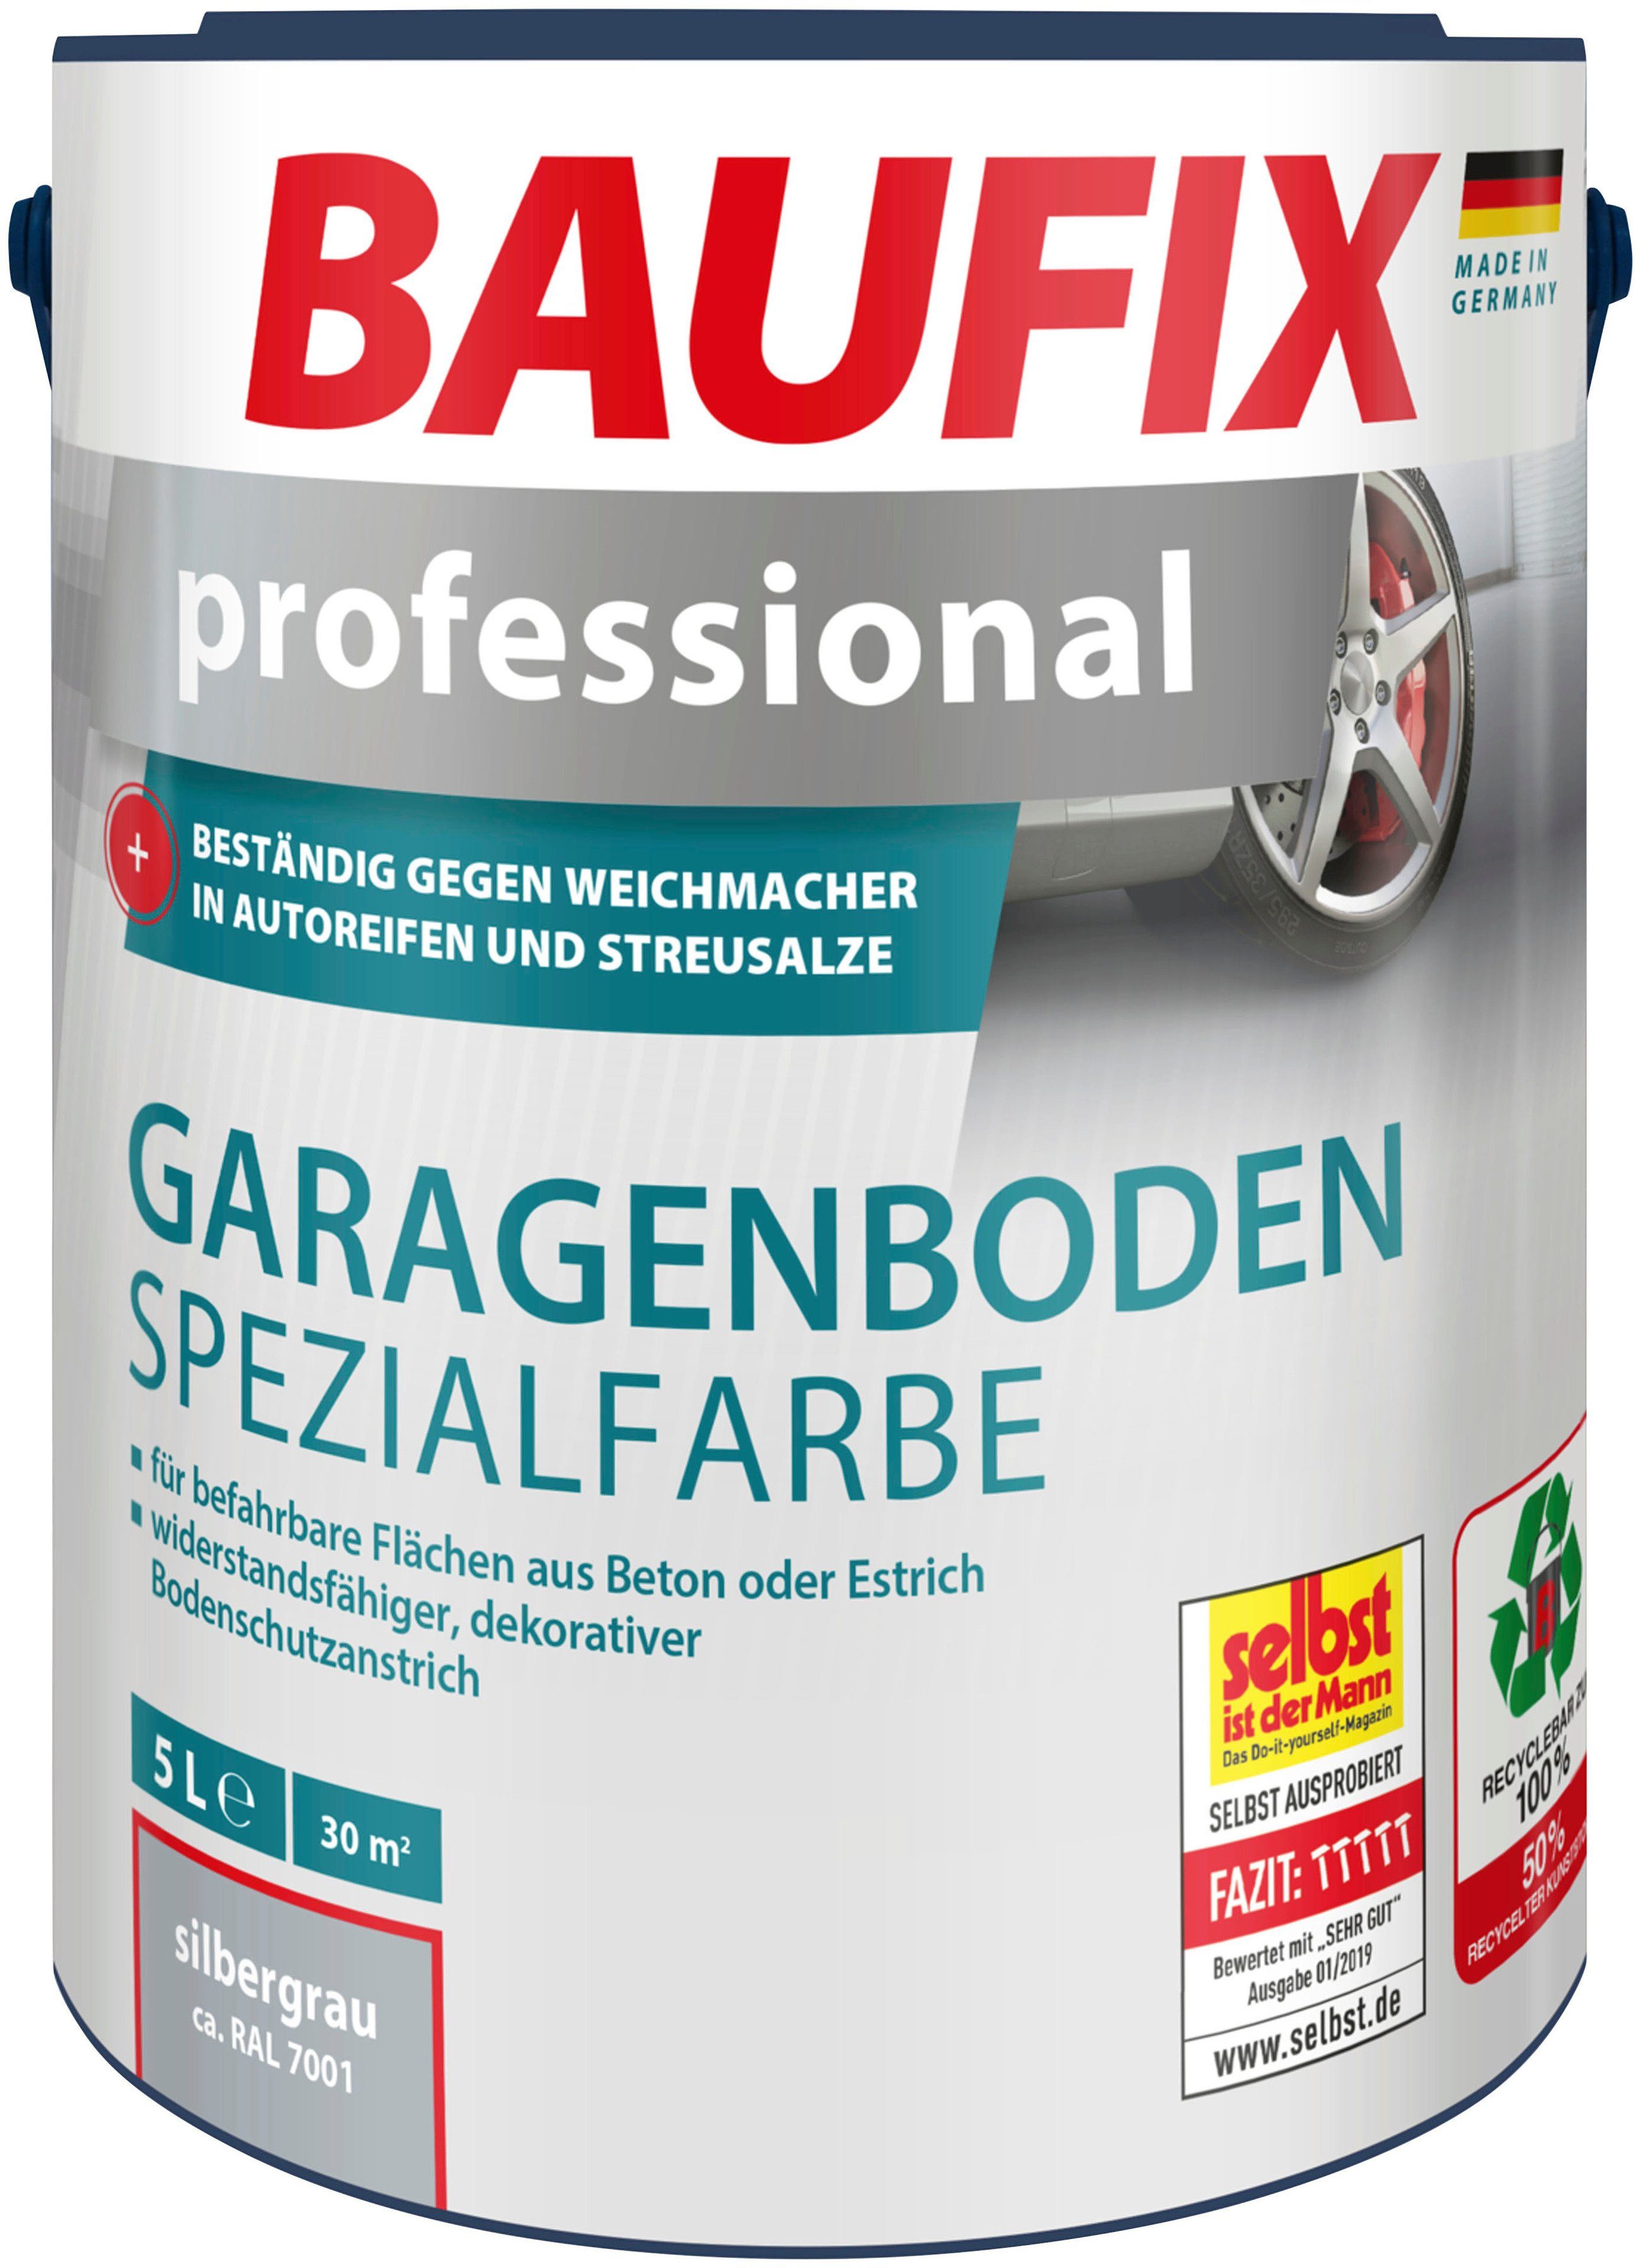 Baufix Acryl-Flüssigkunststoff professional Garagenboden Spezialfarbe, UV 5L, beständig, matt wasserbeständig, wetterbeständig